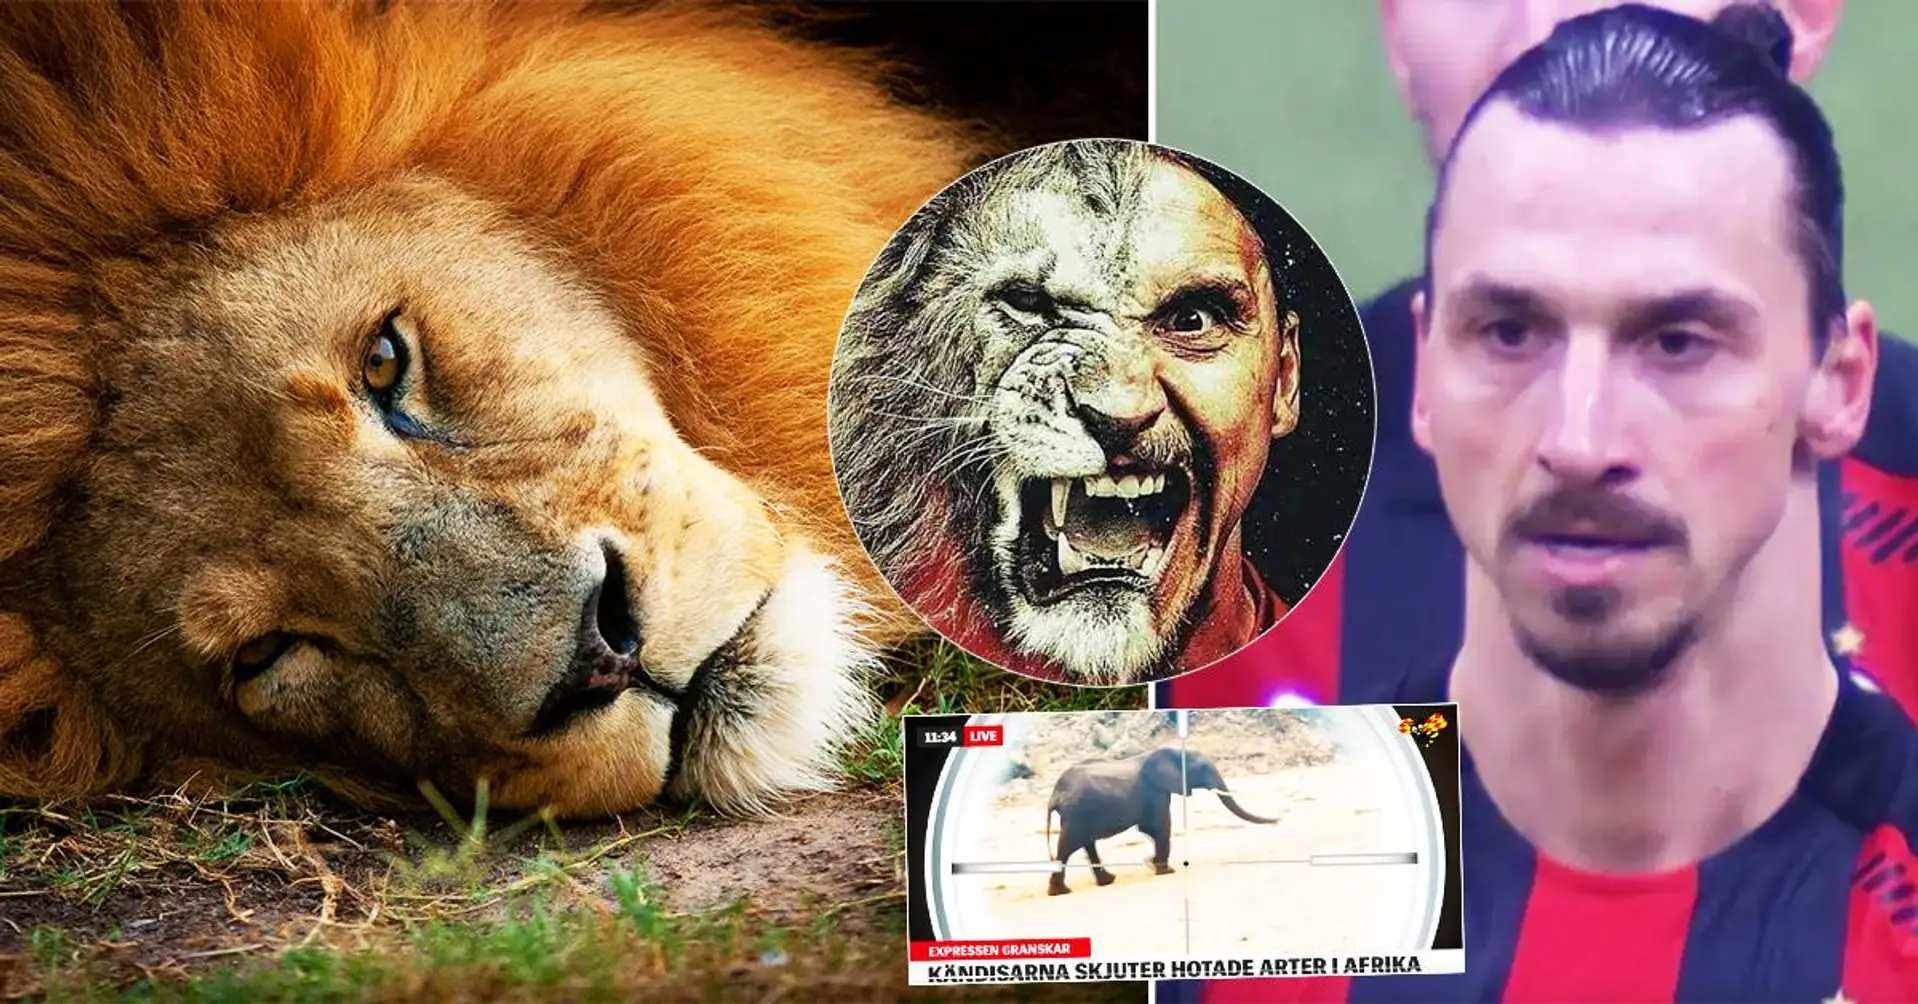 Ibrahimovic erschoss, tötete und importierte einen Löwen aus Afrika, nahm seine Haut und seinen Schädel mit nach Hause - schockierende Berichte aus Schweden